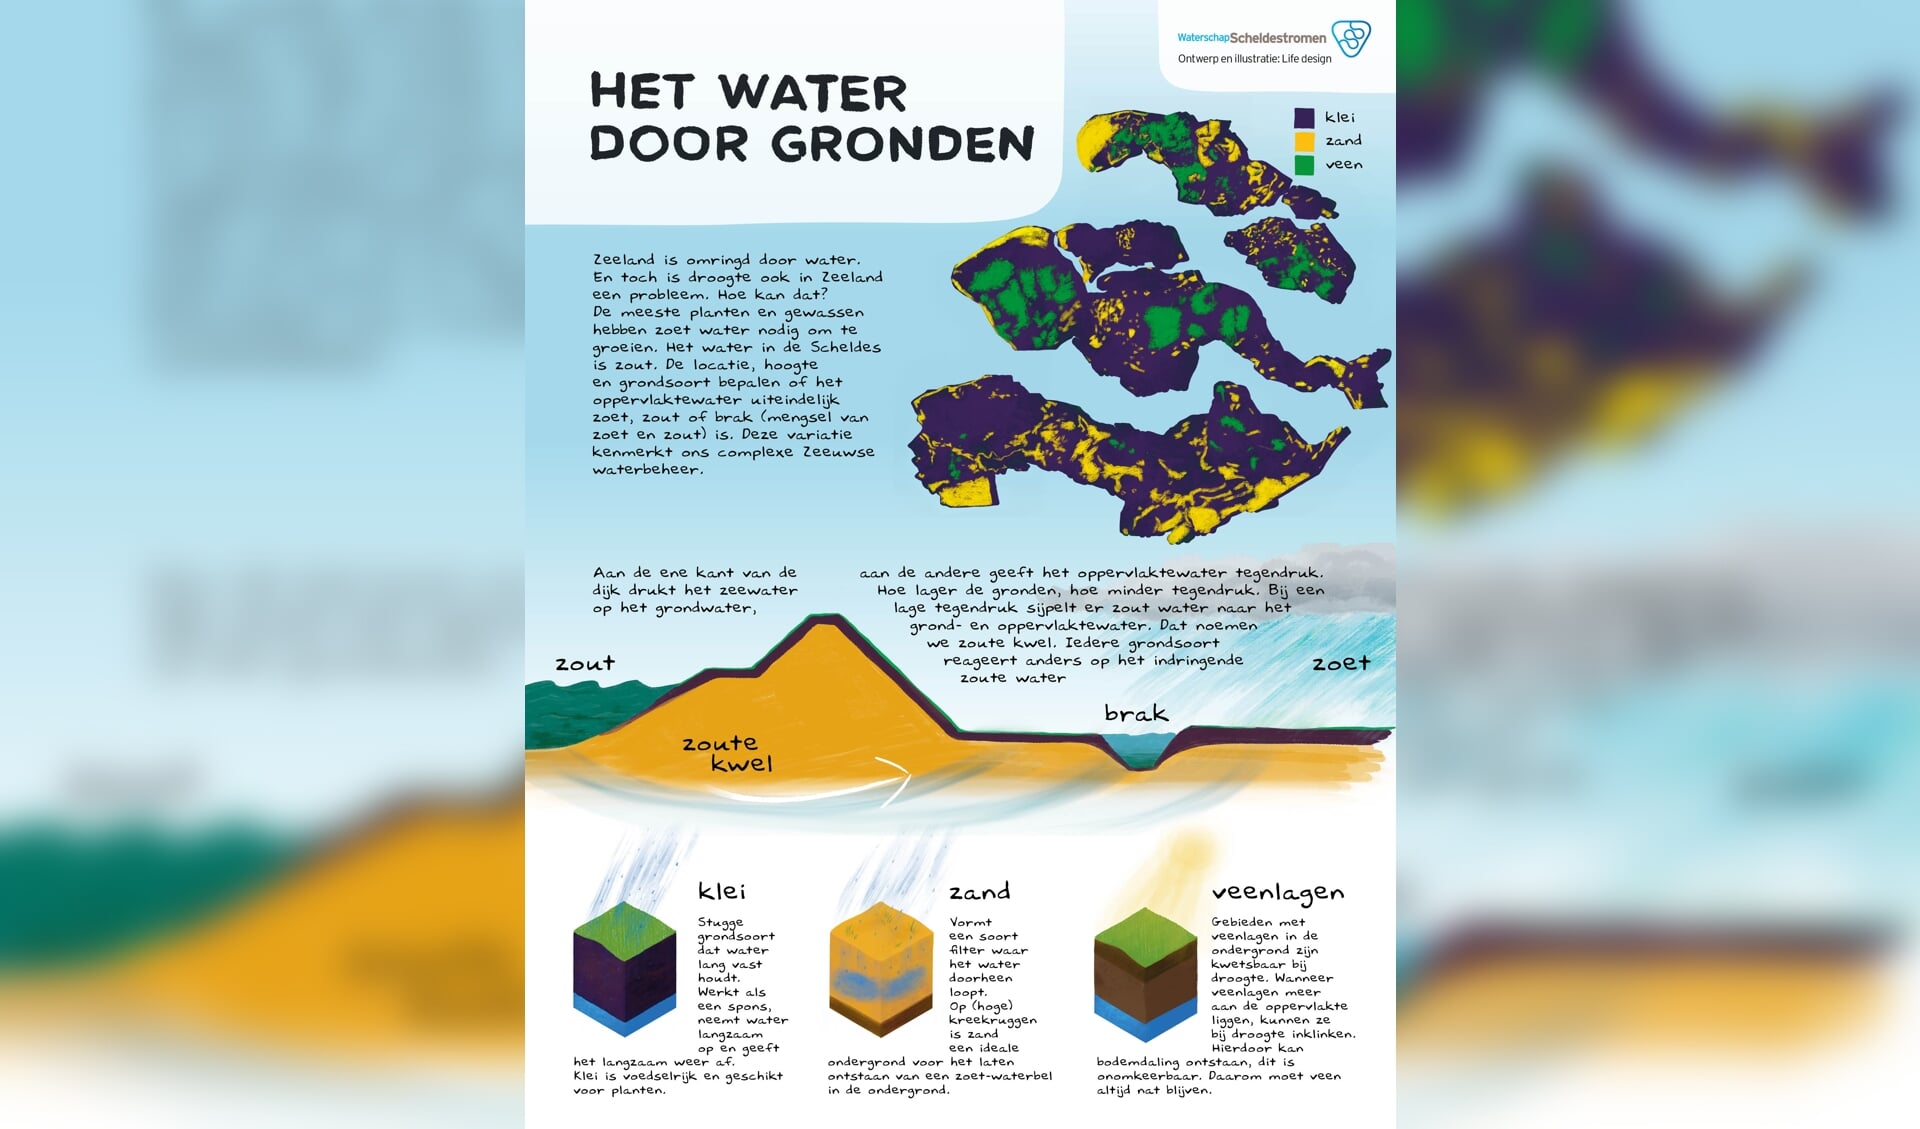 Deze infographic laat de verschillende ondergronden in Zeeland zien en hoe deze reageren op een watertekort.